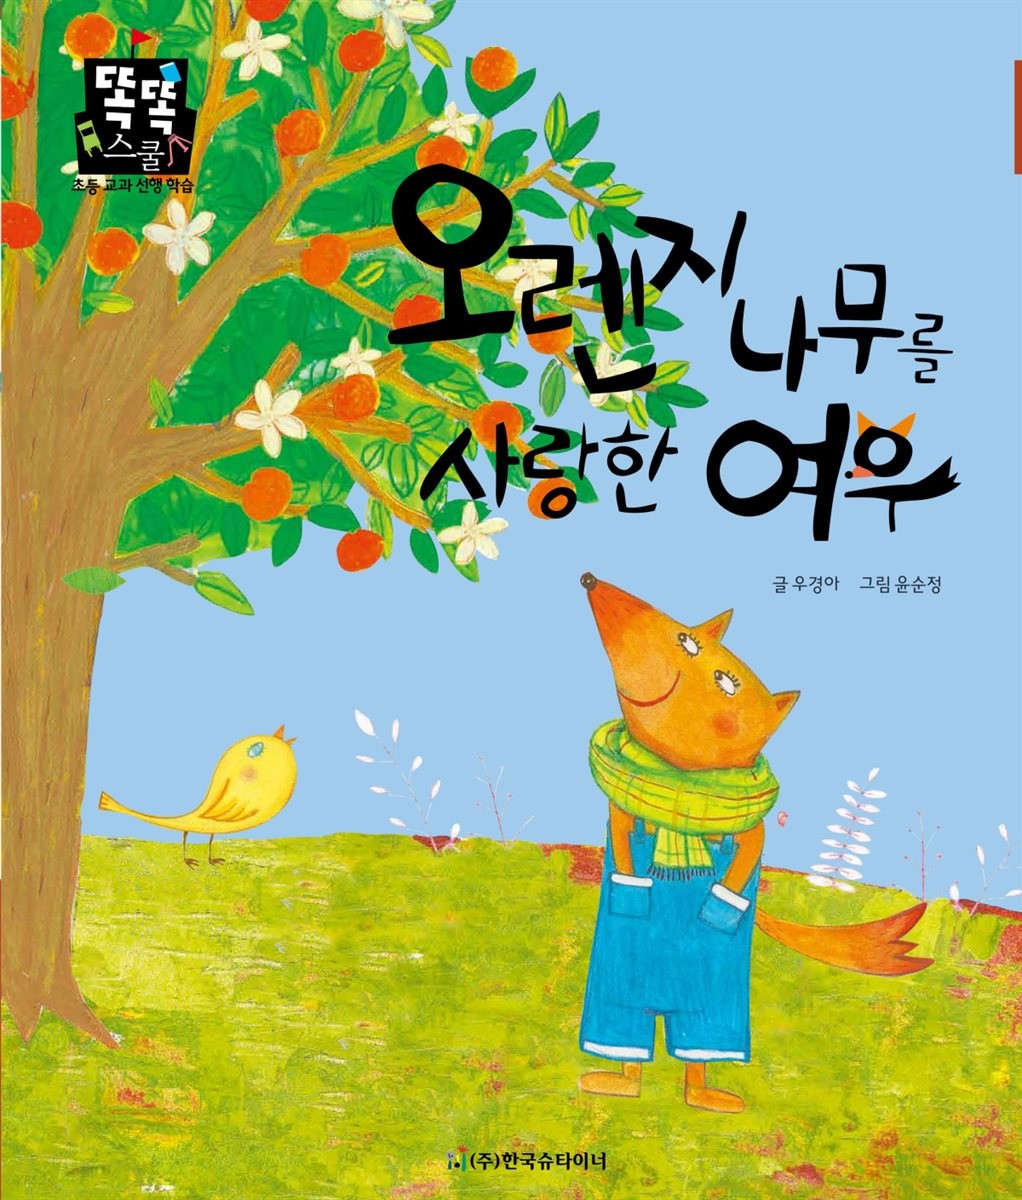 کتاب داستان کودکانه کره ای 오렌지 나무를 사랑한 여우 از فروشگاه کتاب سارانگ